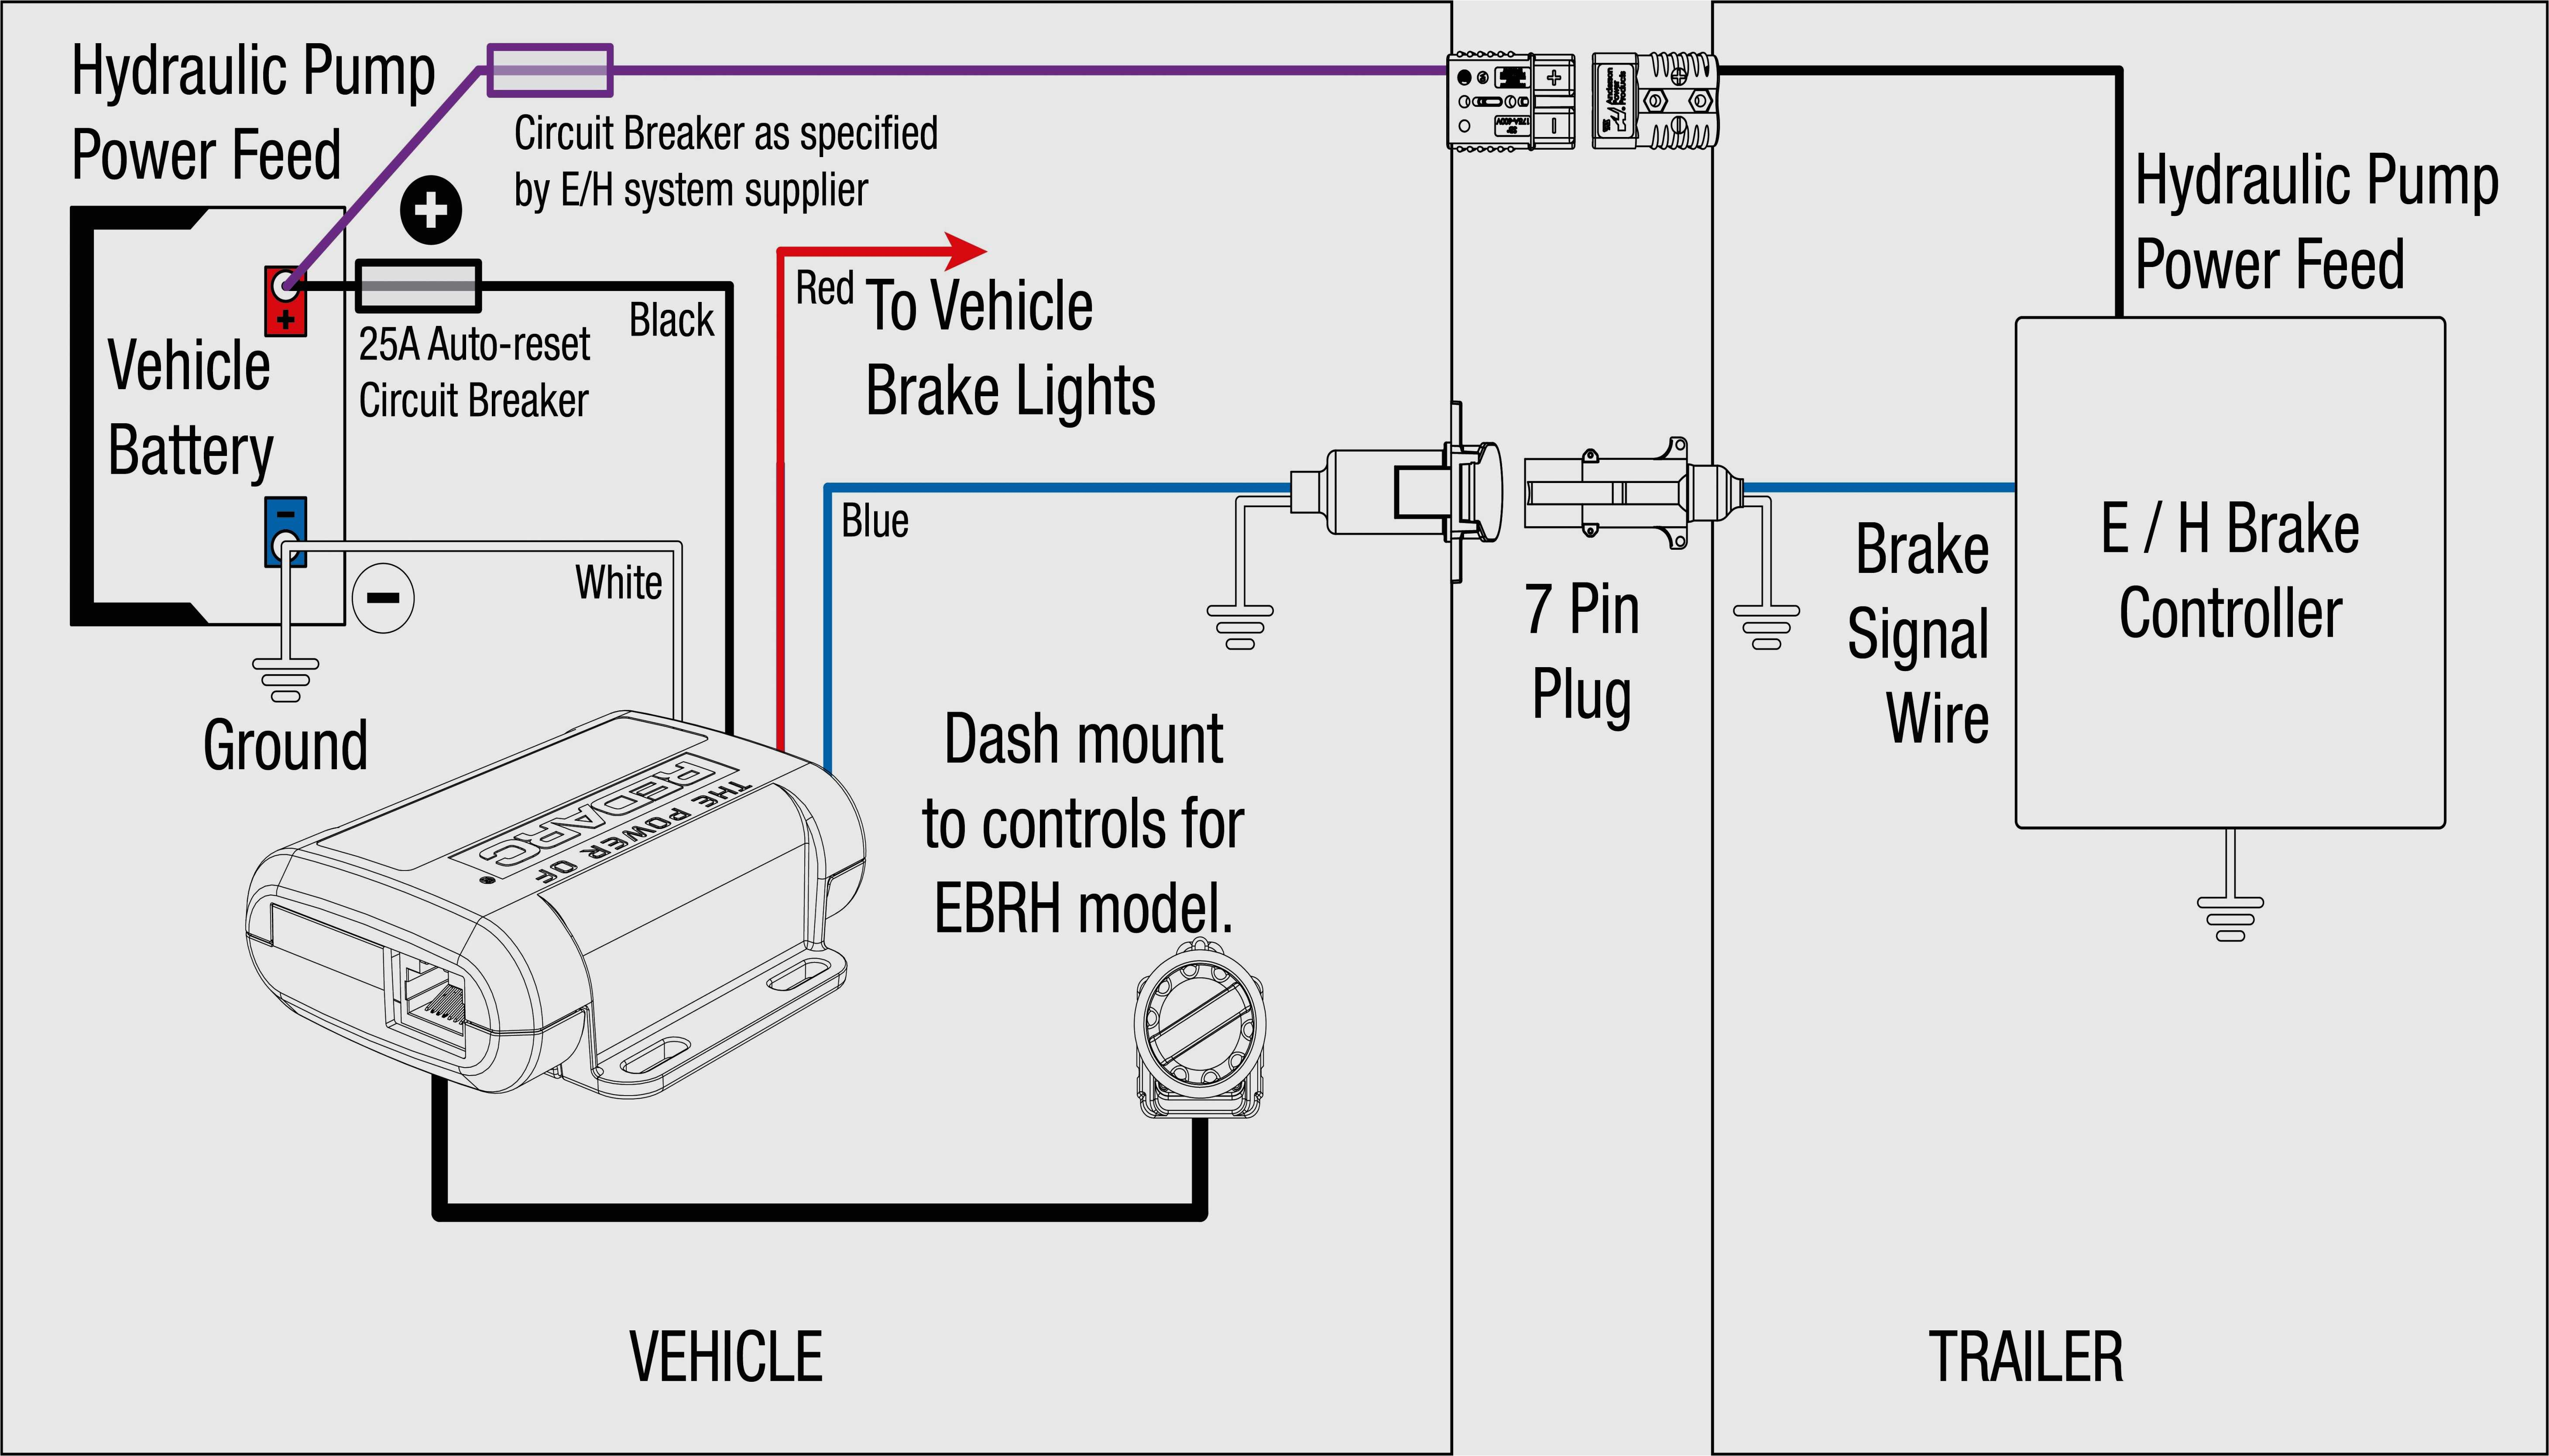 tekonsha voyager wiring diagram wiring diagram sheet tekonsha voyager xp wiring diagram tekonsha voyager wiring diagram